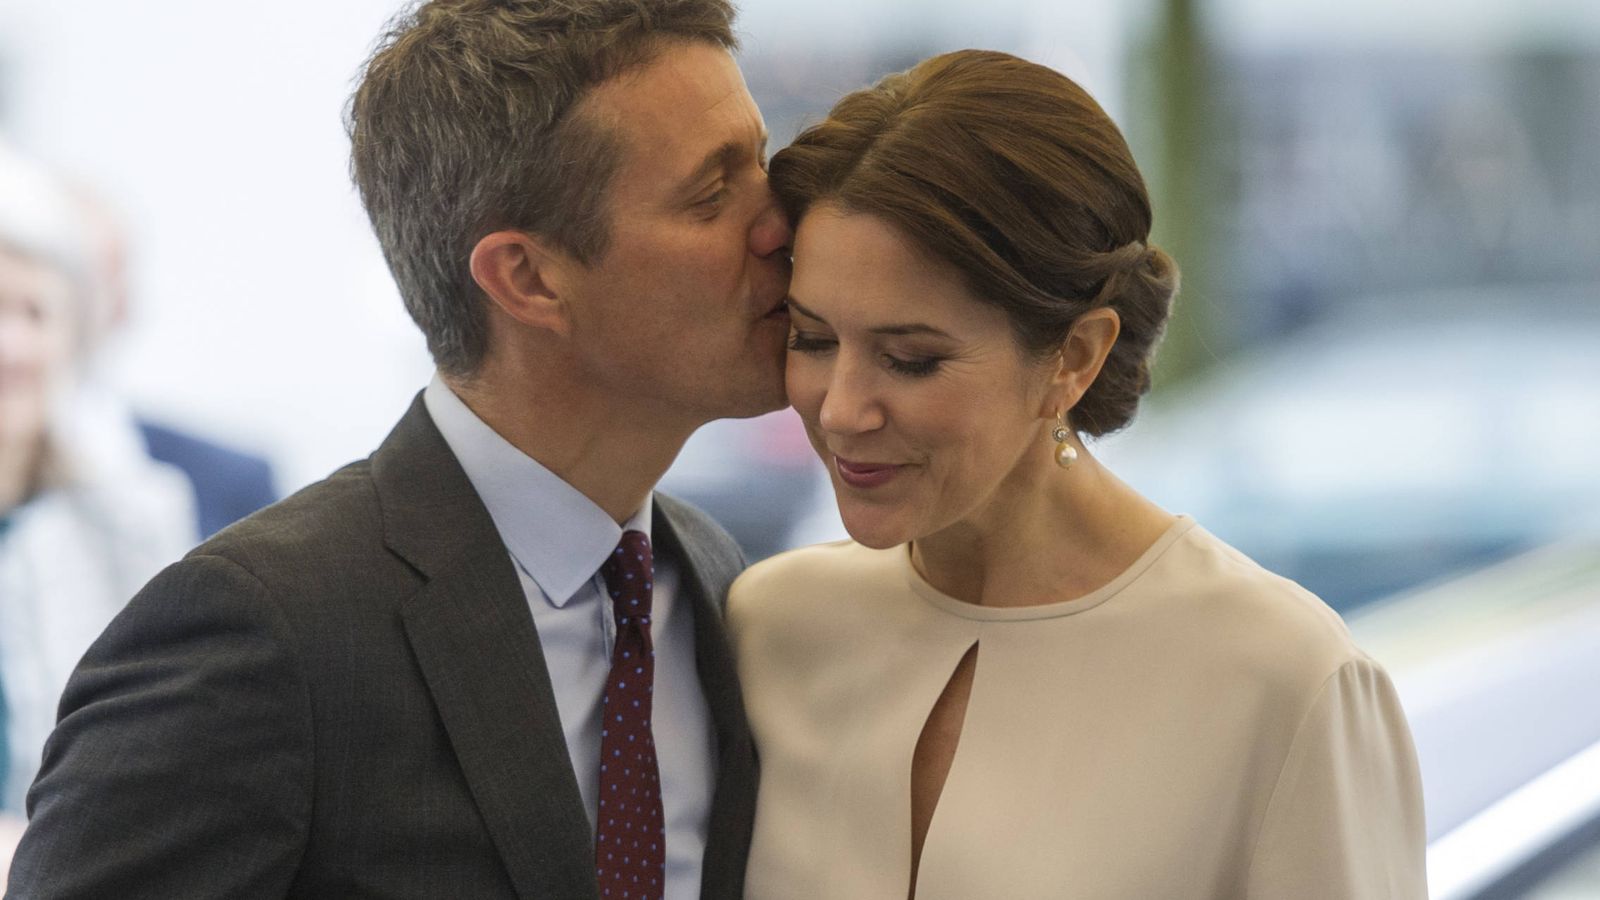 Foto: Federico de Dinamarca besa cariñosamente a su esposa Mary en una visita oficial a Múnich, Alemania. (Getty)